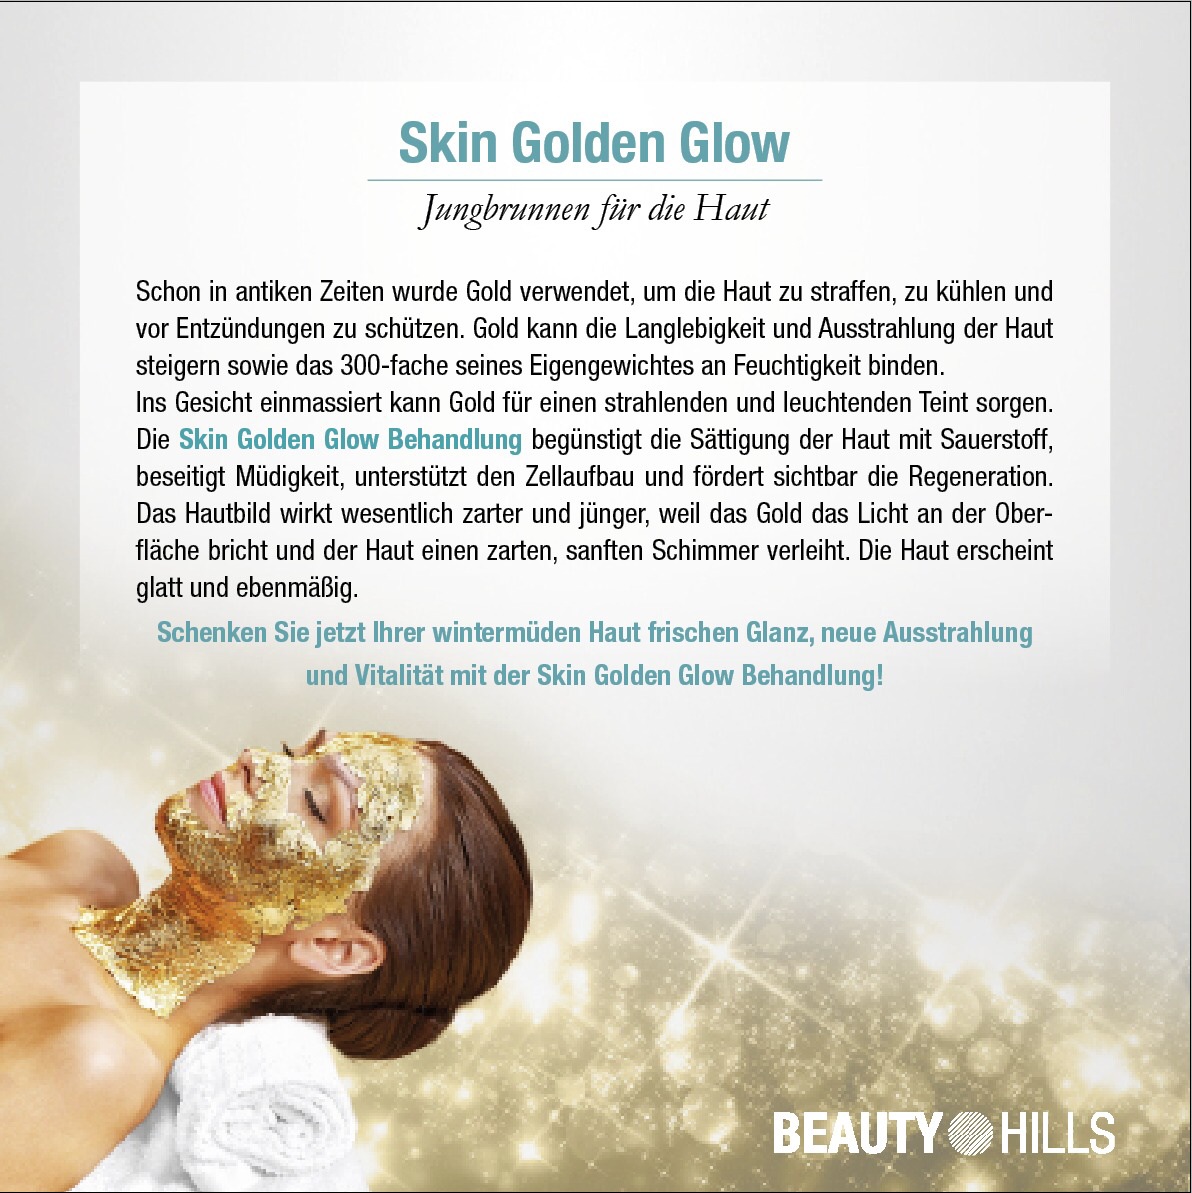 Skin Golden Glow Behandlung!

Nicht nur Luxuriös, sondern auch effektiv